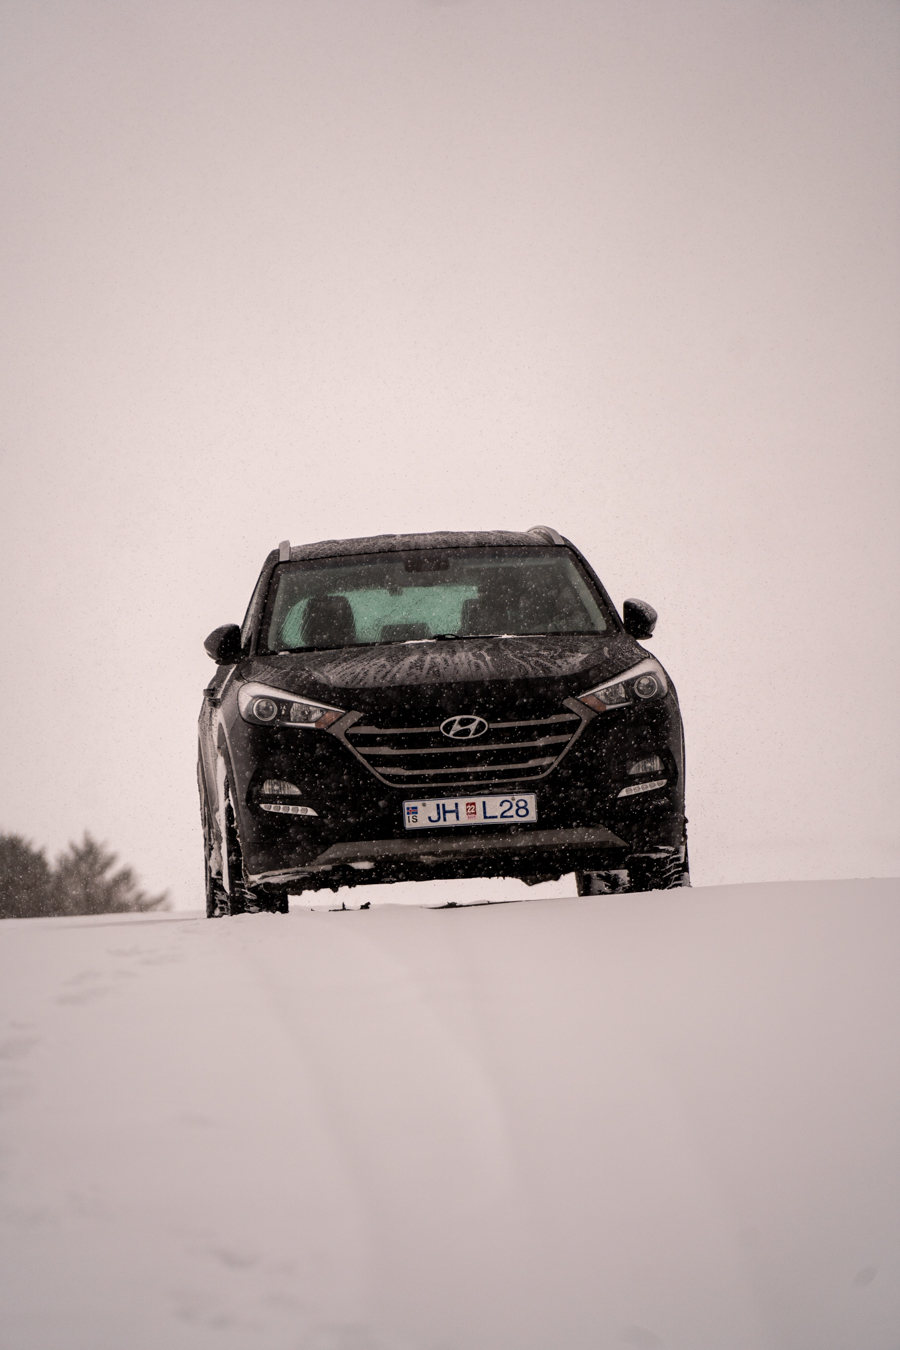 Hyundai Tucson in snowy Iceland